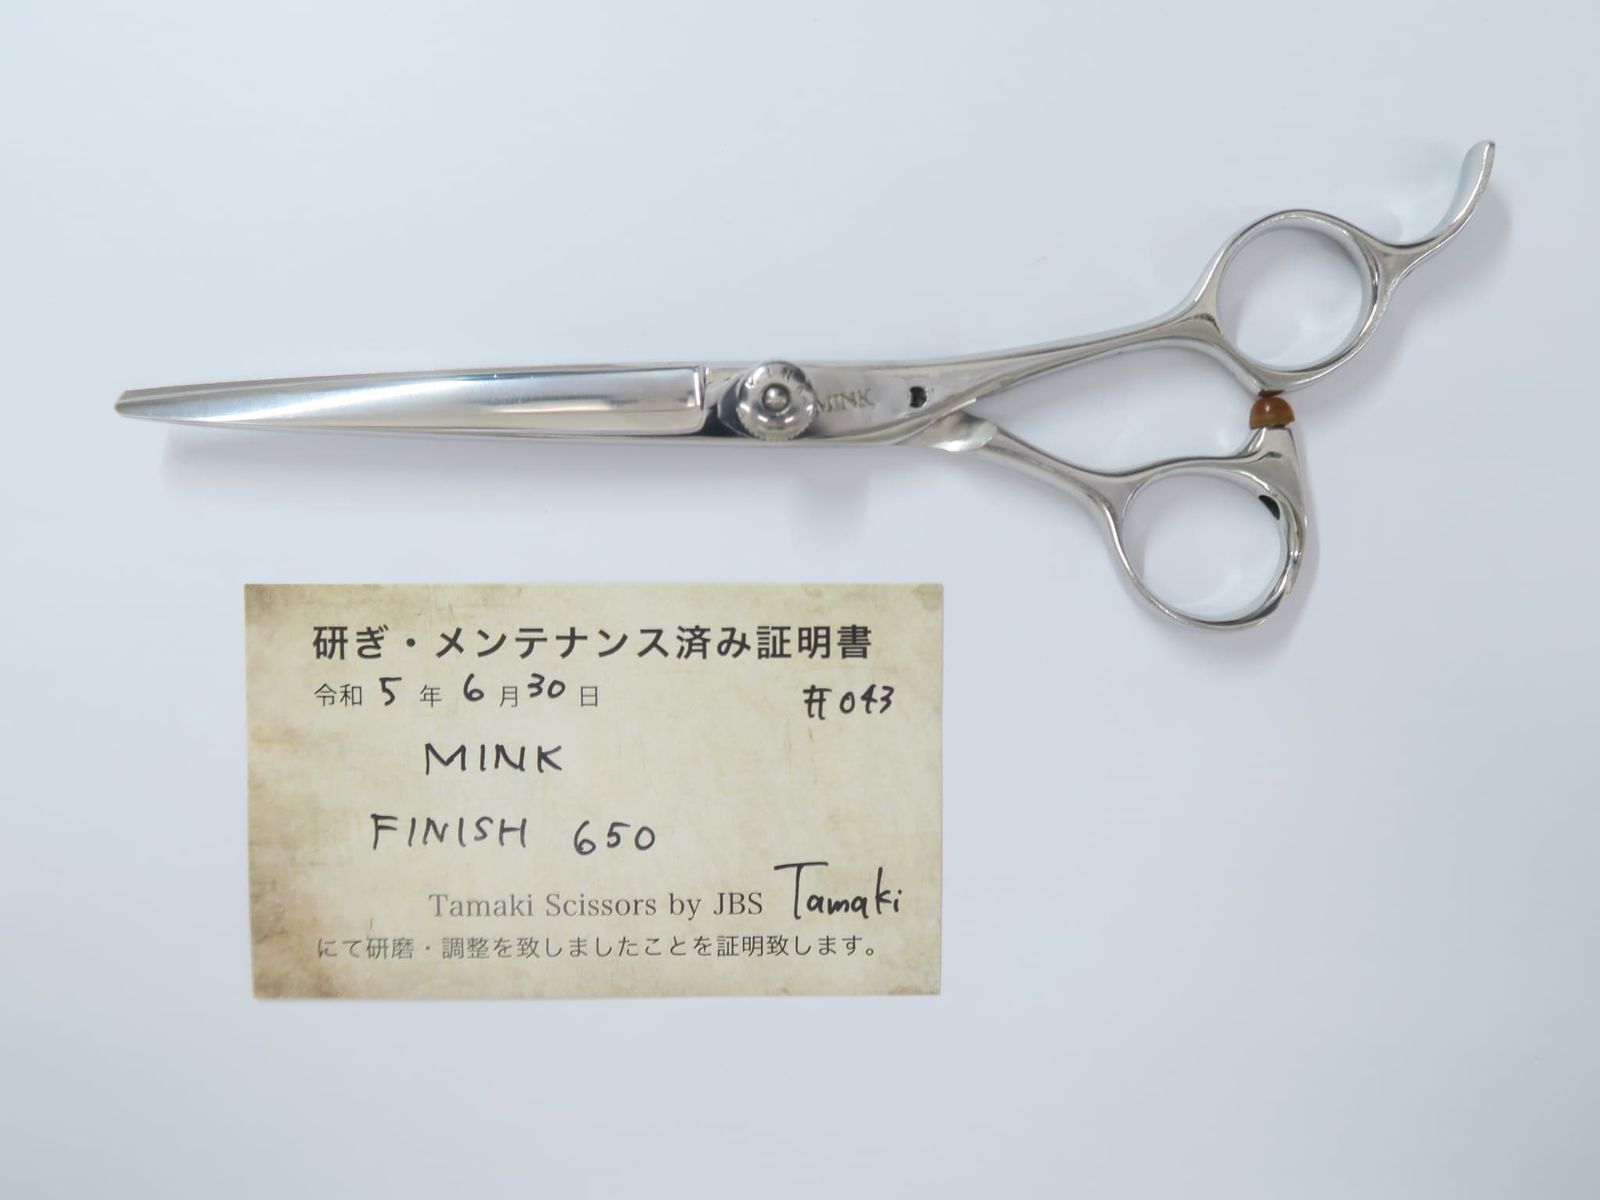 Bランク【MINK ミンク】 FINISH 650 シザー 美容師・理容師 6.4インチ